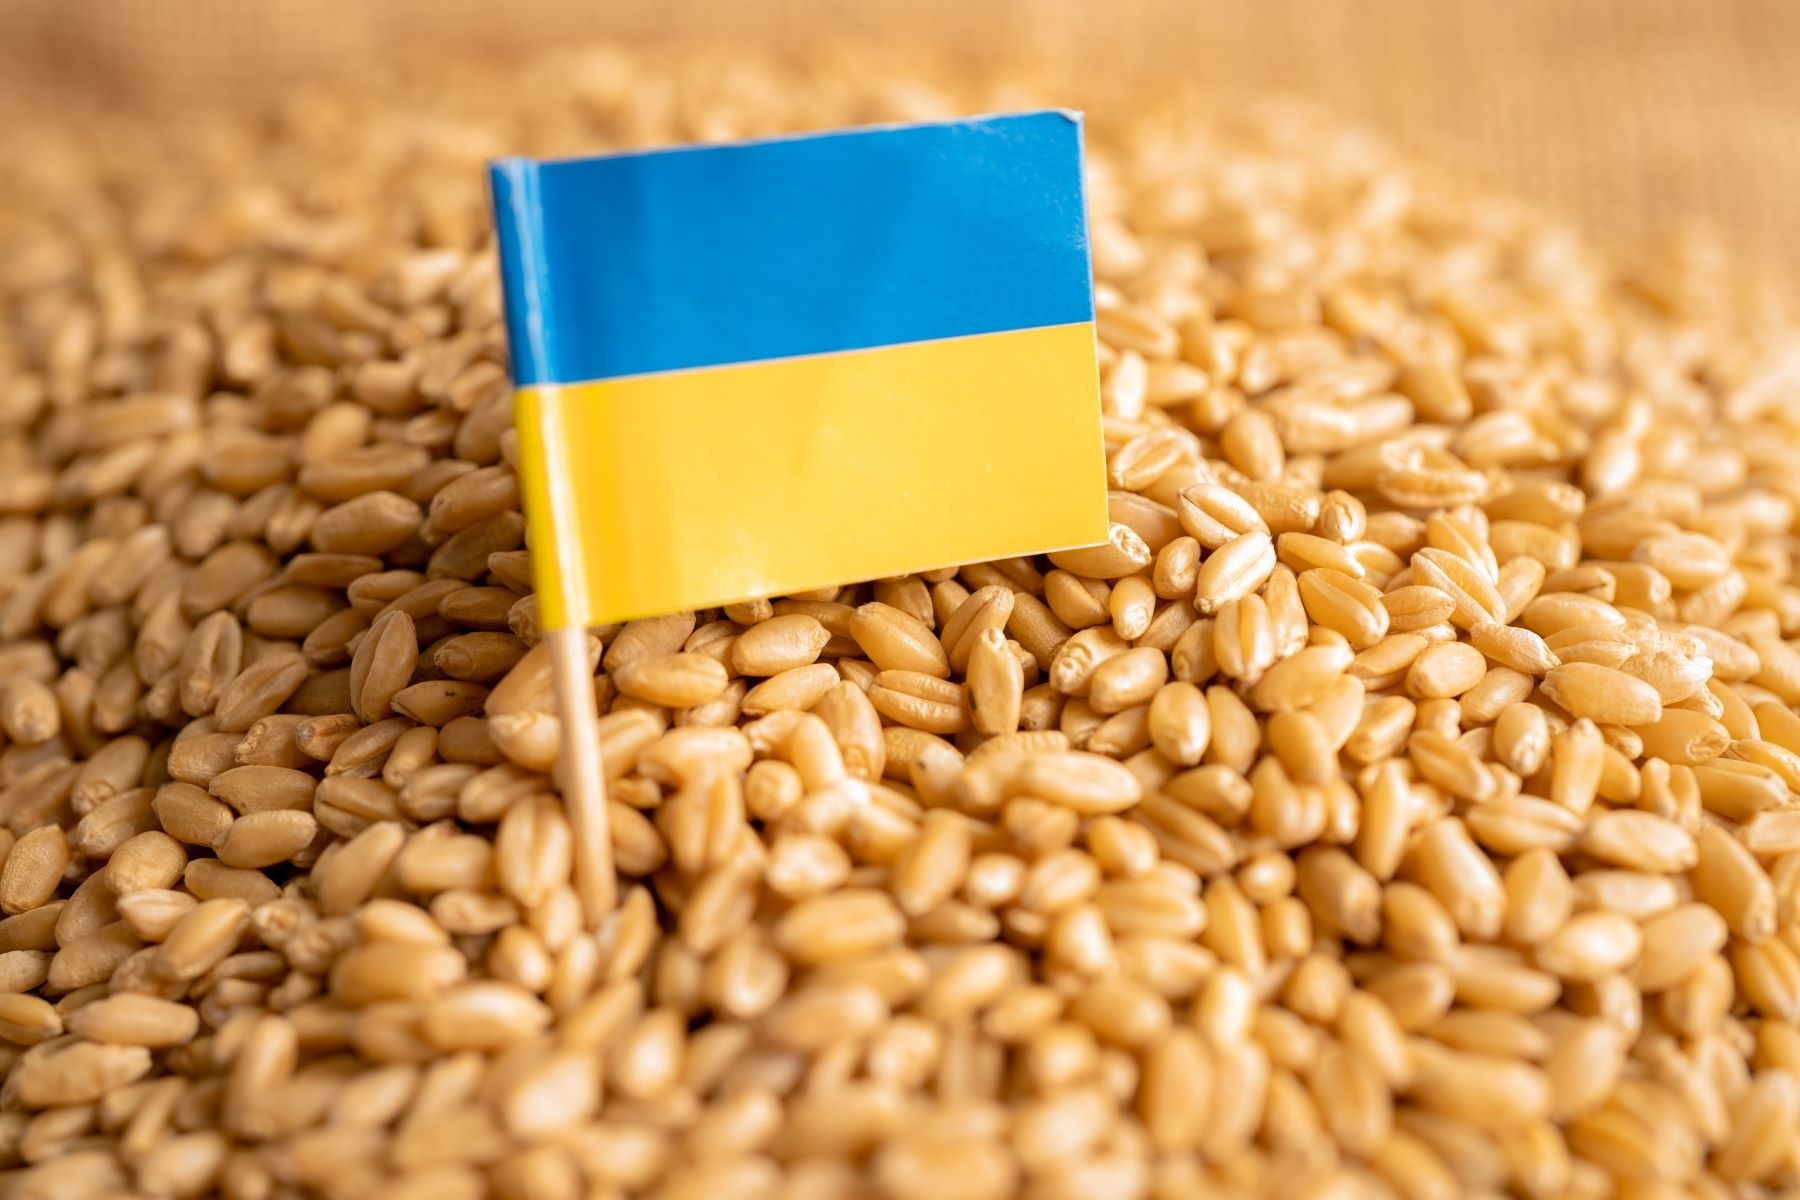 Lenkija ir Ukraina surengė derybas dėl ukrainietiškų produktų importo reguliavimo